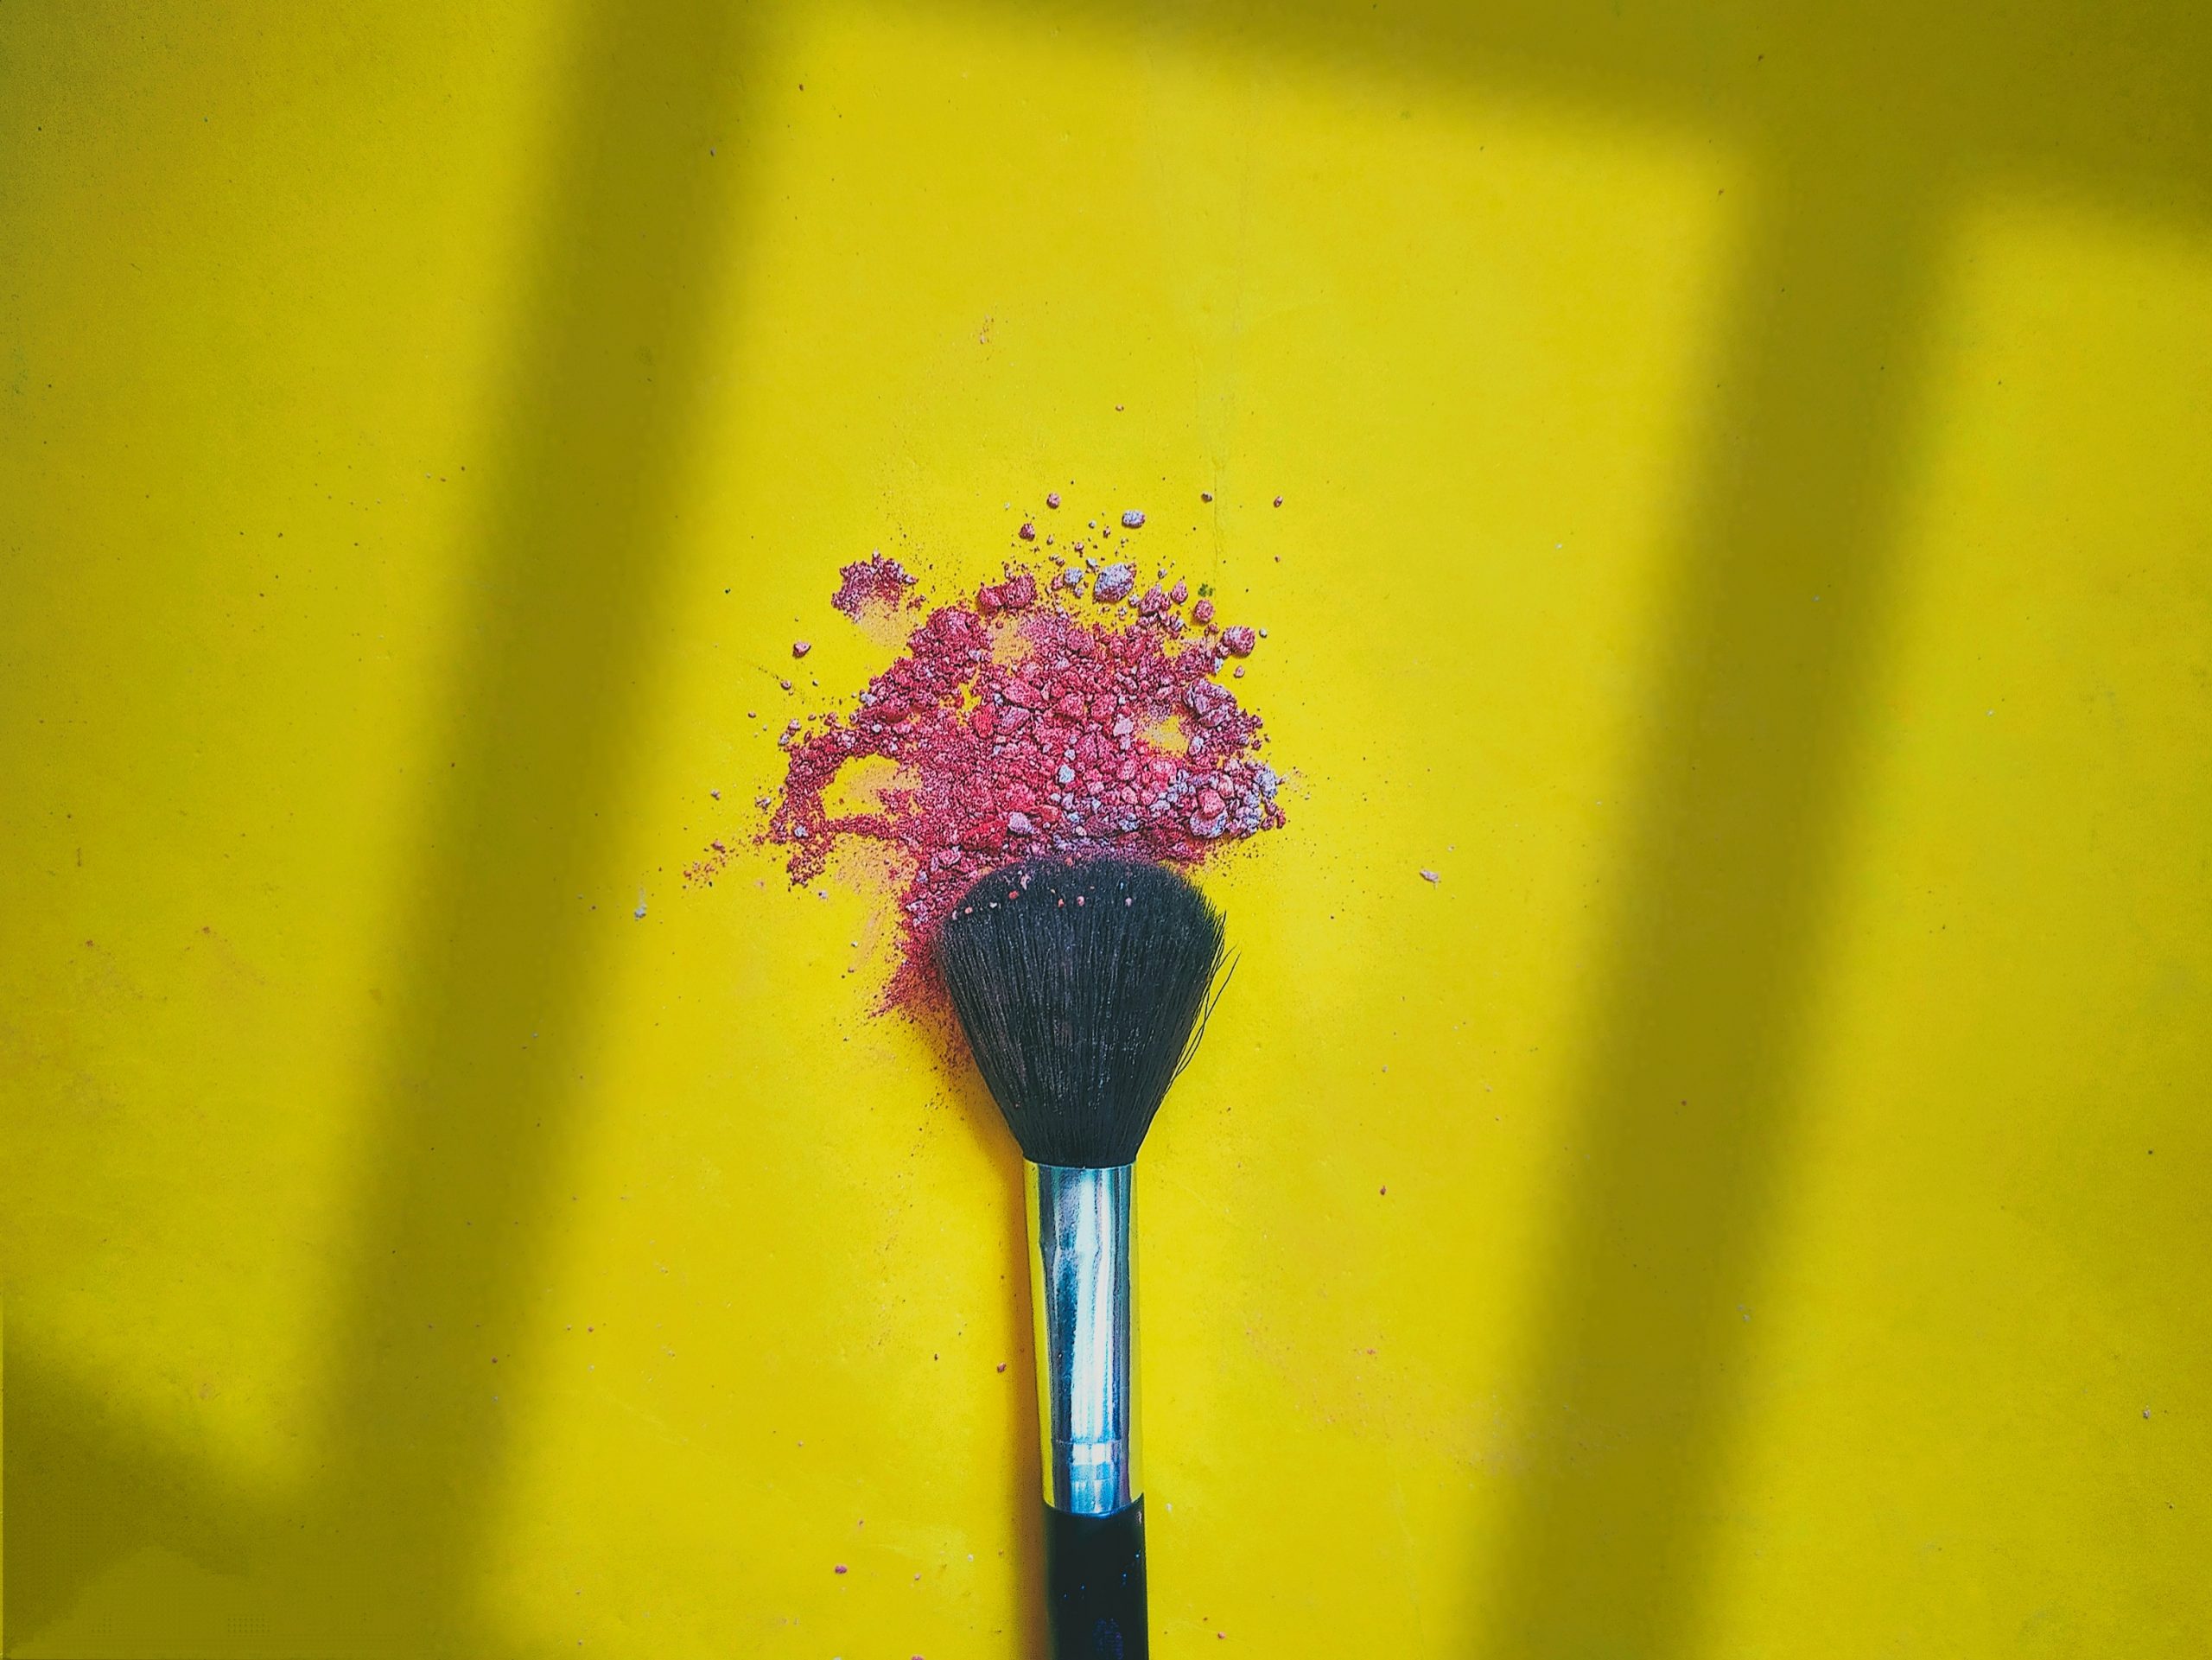 A makeup brush